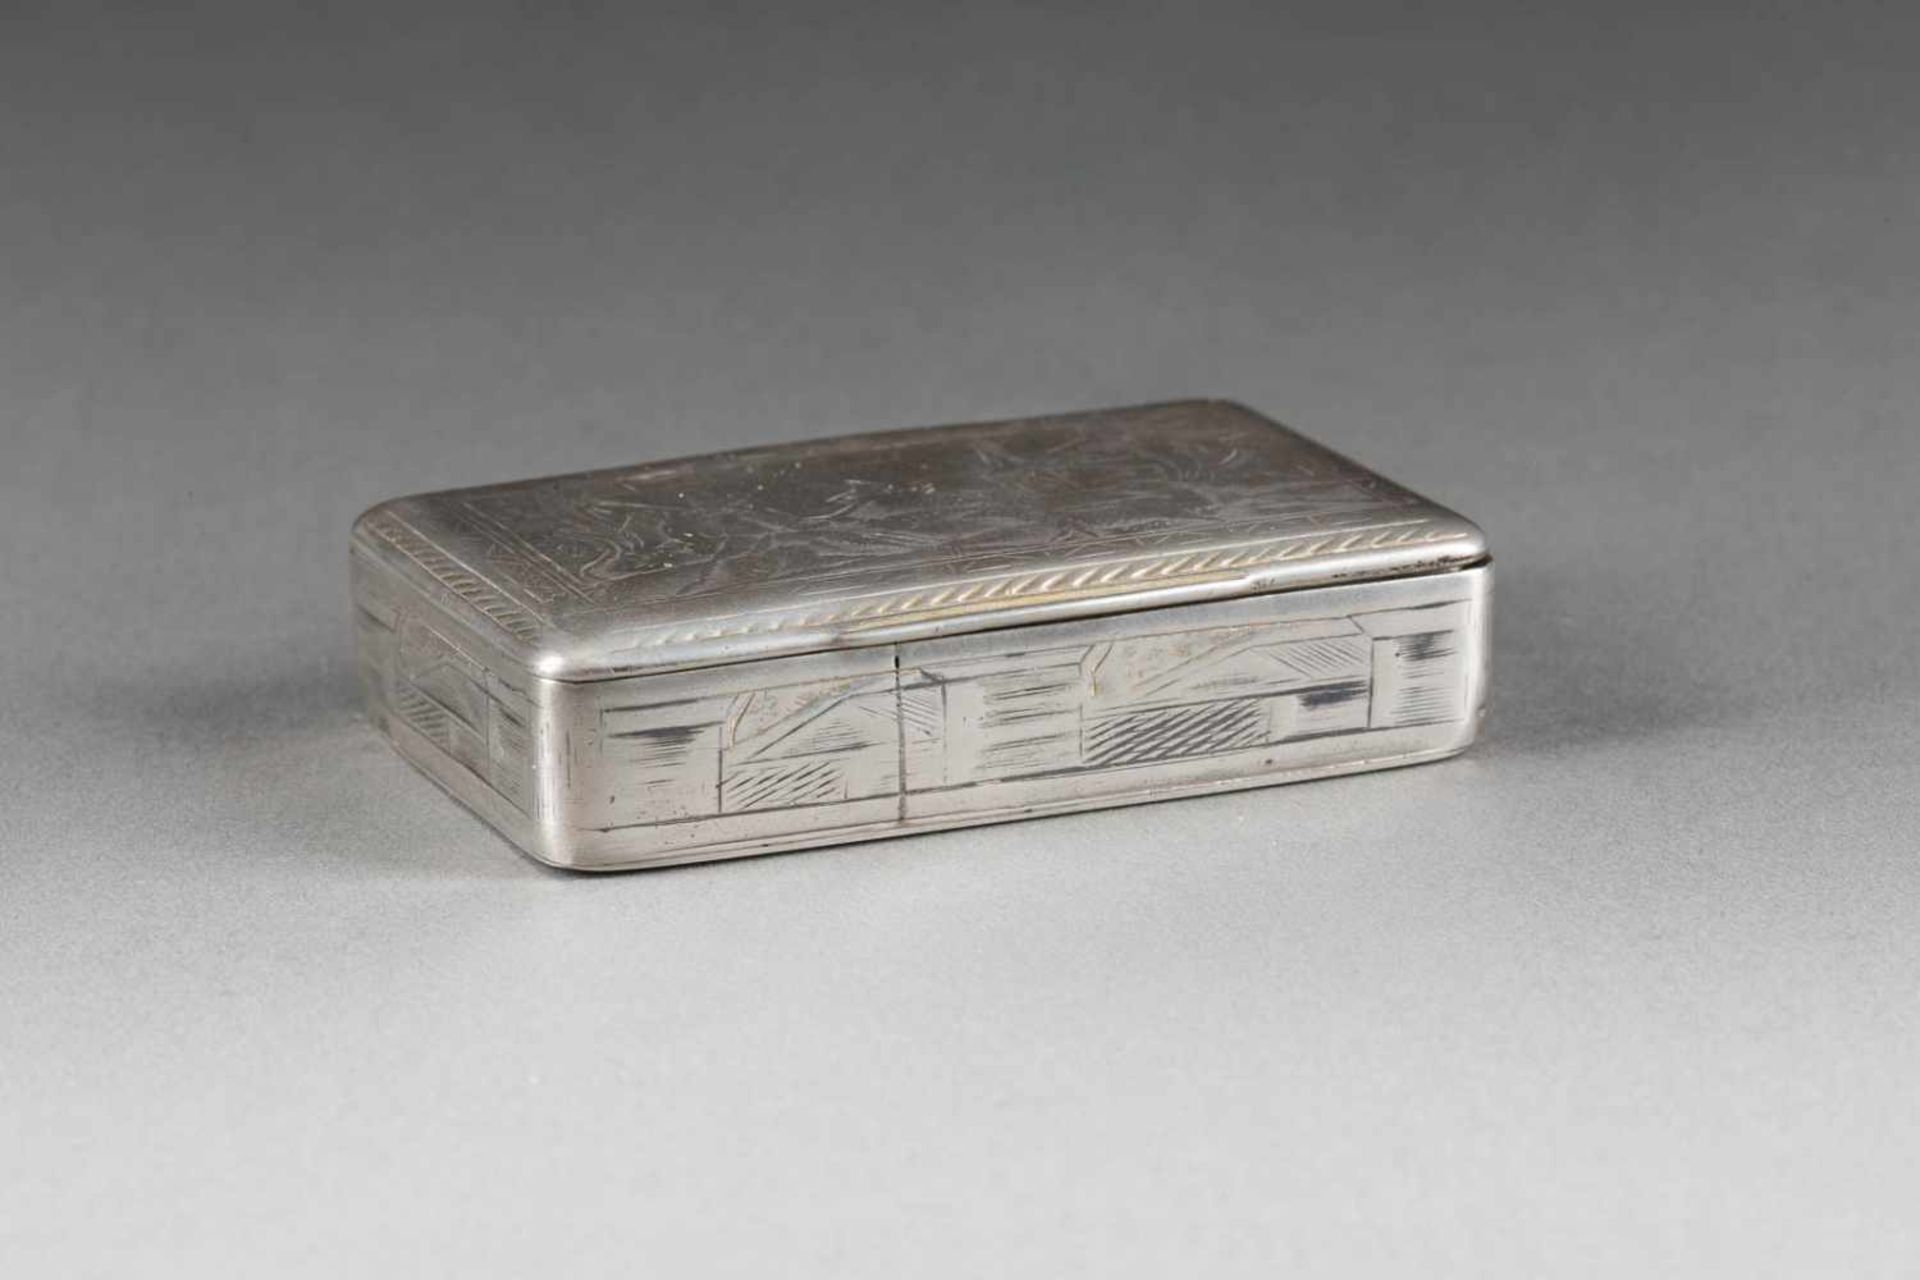 SCHNUPFTABAKDOSE MIT HIRTEN Russland, Moskau, 1836 Silber, allseitiger Gravurdekor. L. 6,8 cm, 59 g. - Bild 3 aus 3